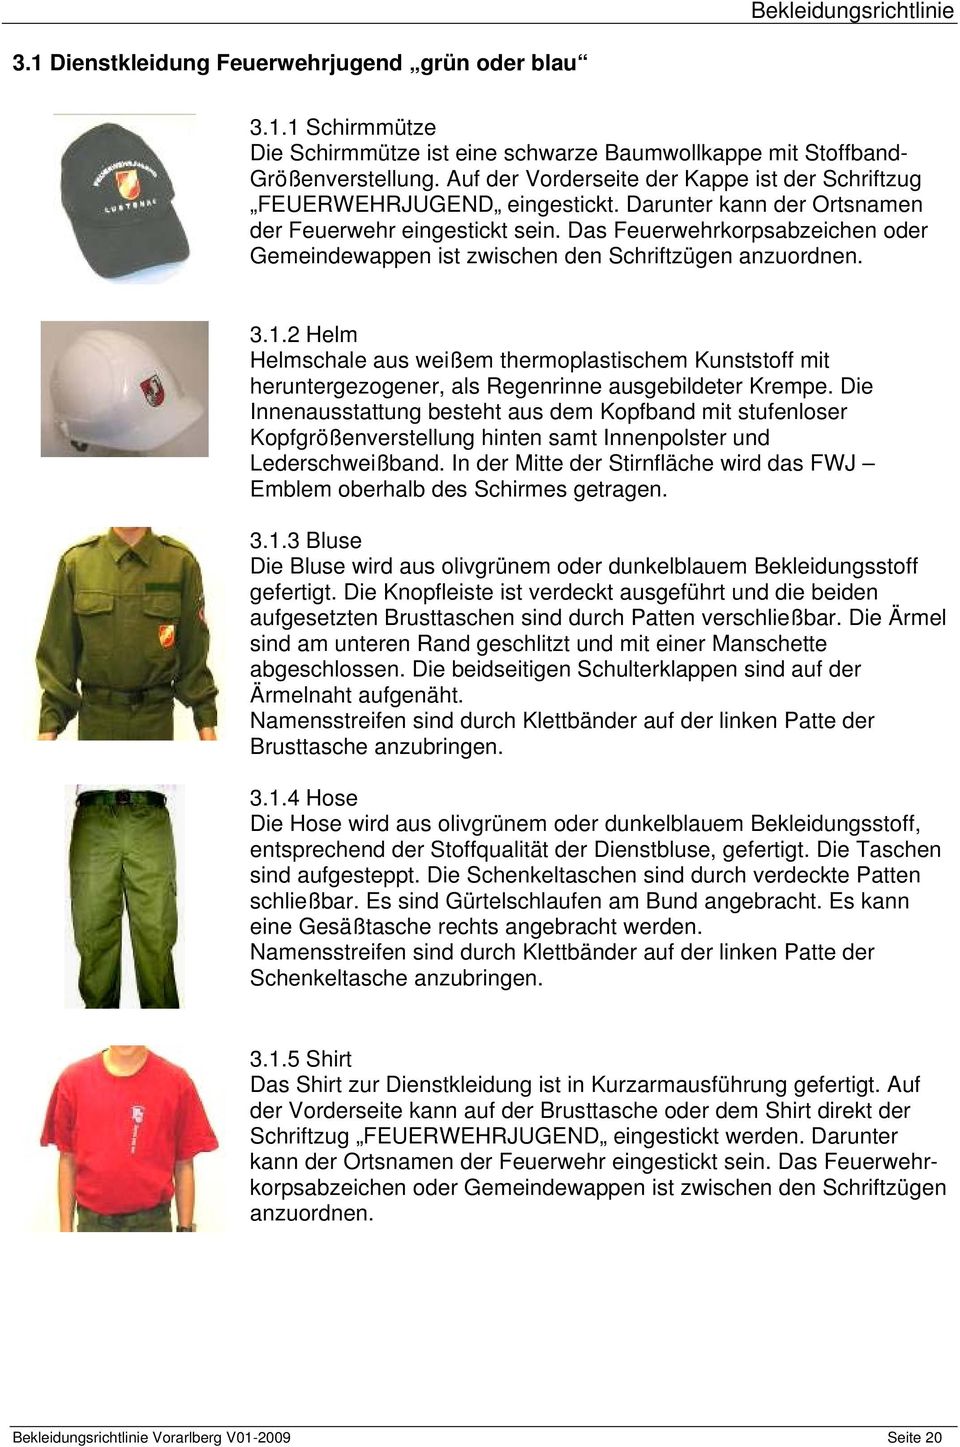 Das Feuerwehrkorpsabzeichen oder Gemeindewappen ist zwischen den Schriftzügen anzuordnen. 3.1.